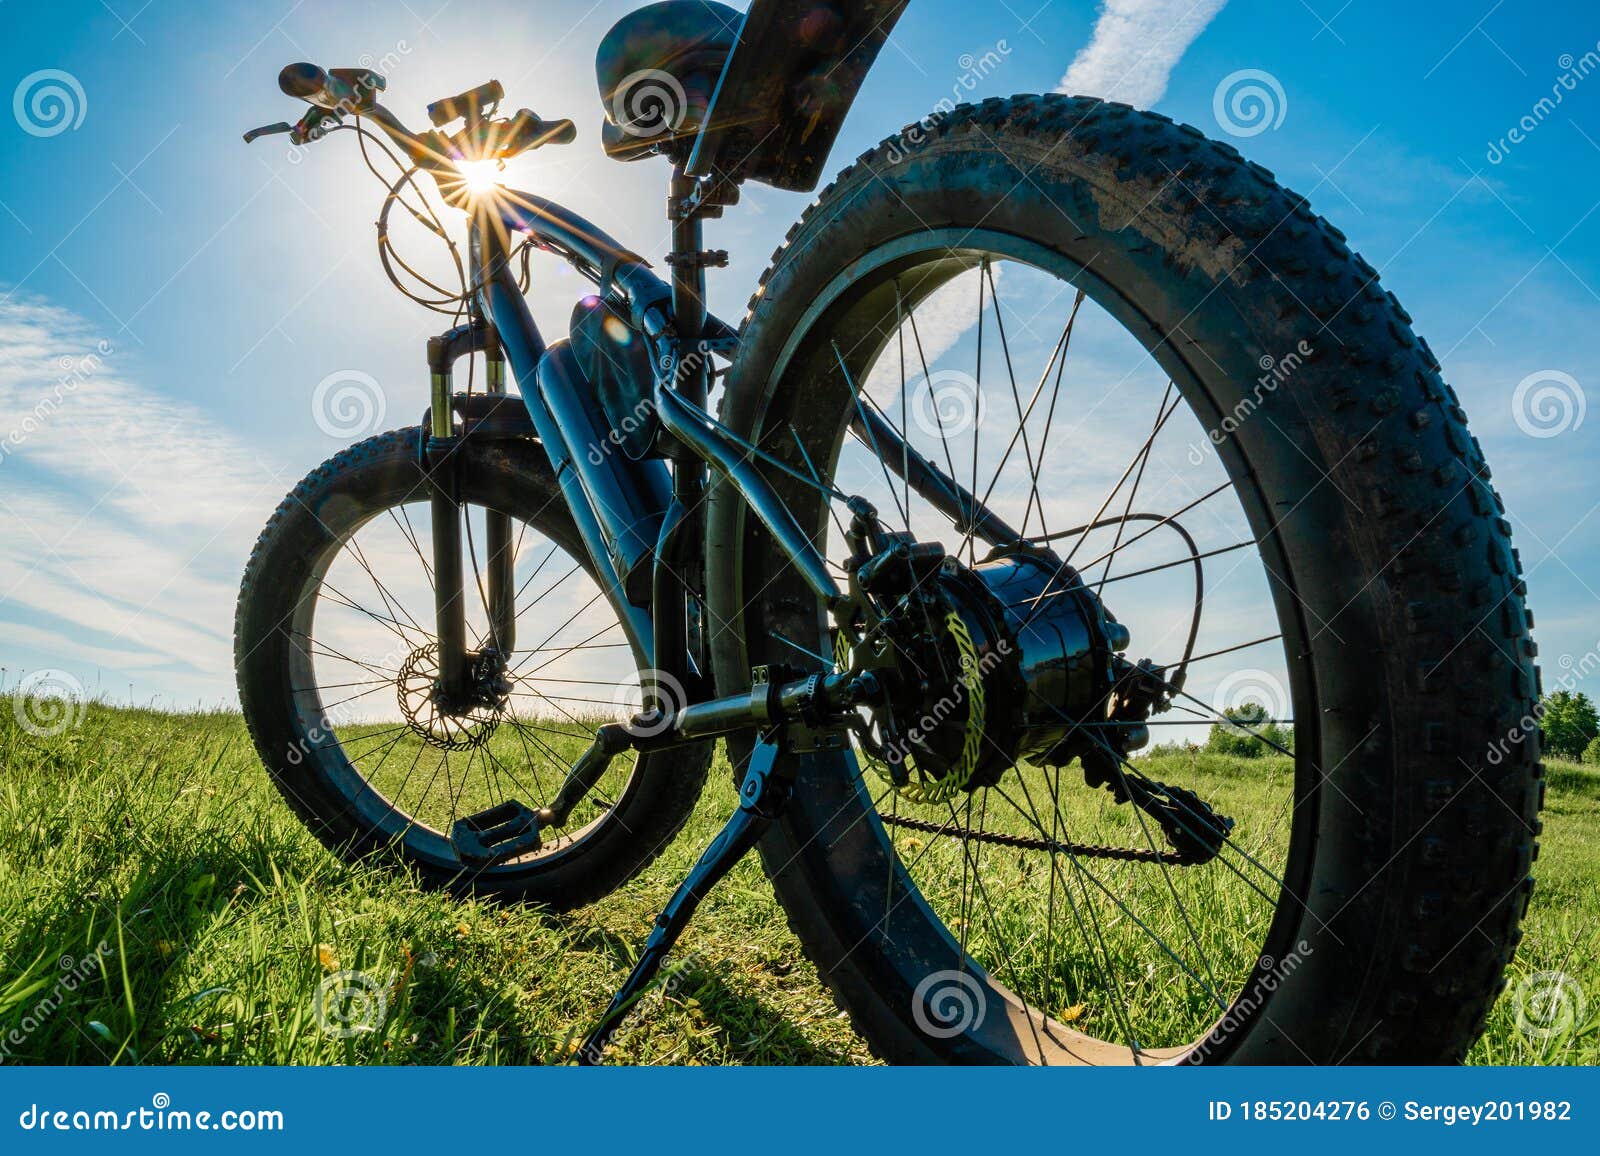 Fiets Met Dikke Wielen. Fiets Stock Foto - Image of groot, fiets: 185204276